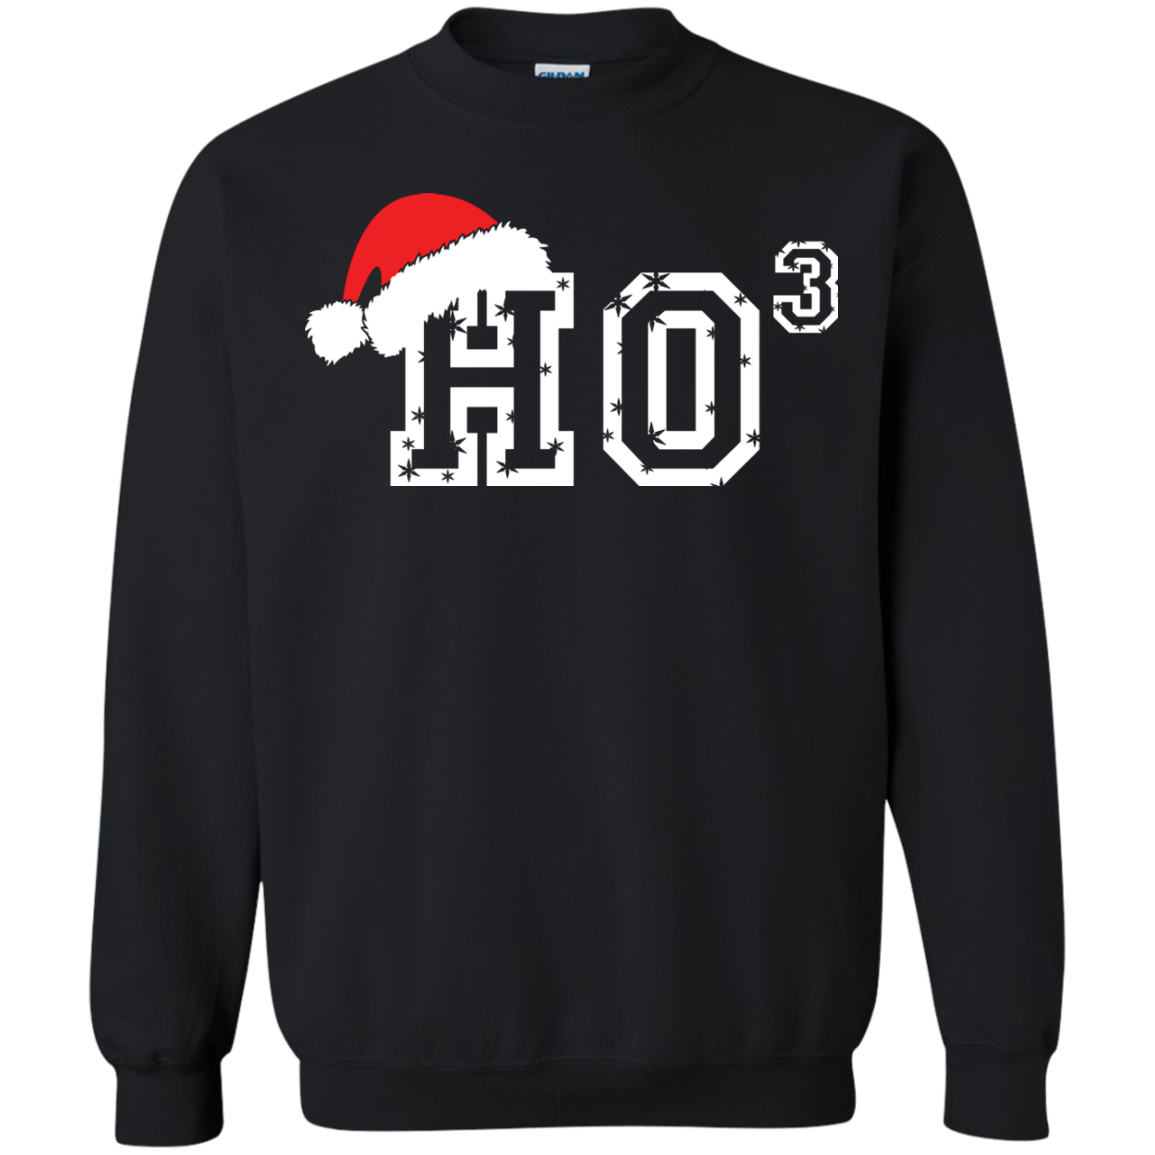 Christmas T-Shirt Ho Ho Ho